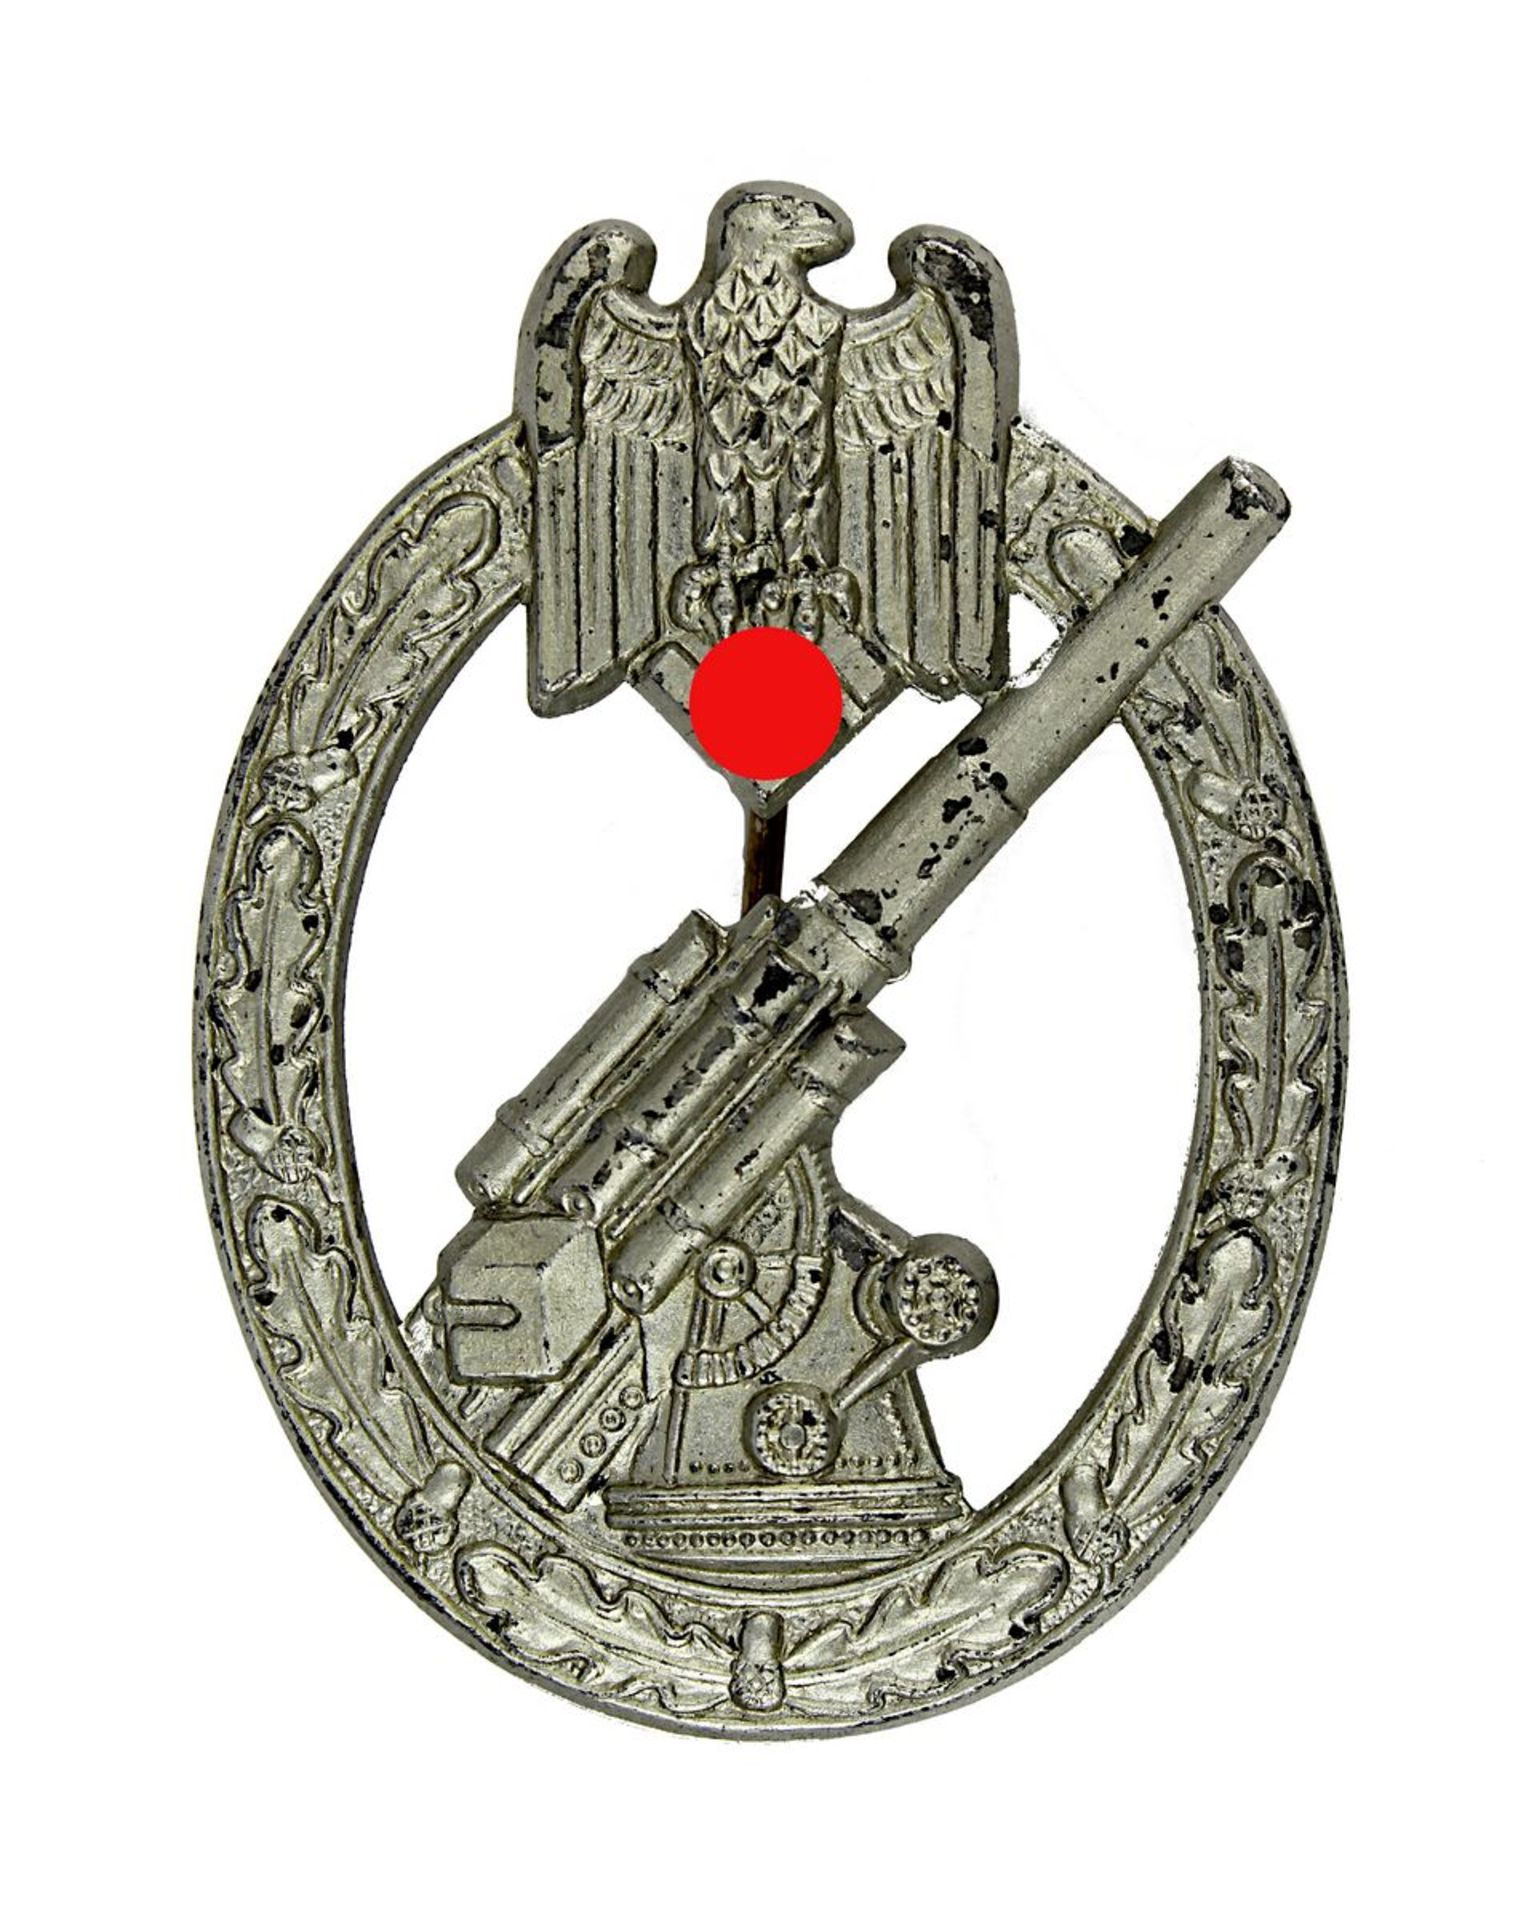 Heeres-Flakabzeichen 1941-45, Feinzink wohl versilbert, hochovaler Ring mit Eichenkranz, darin